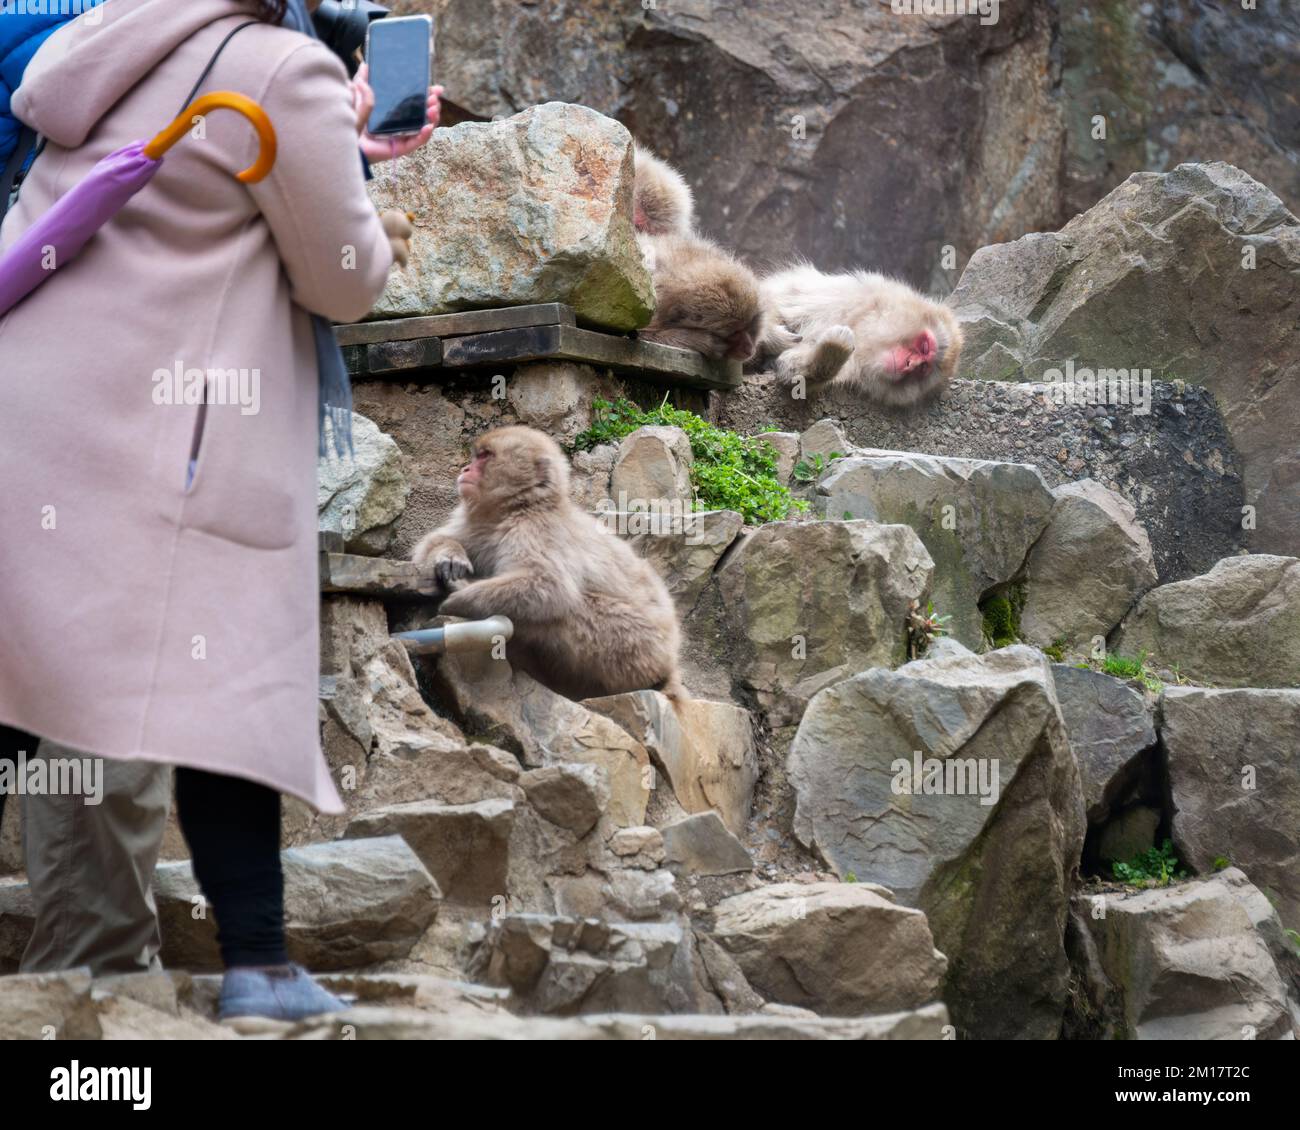 Turisti che scattano foto delle scimmie giapponesi di Macaque addormentate. Parco delle scimmie delle nevi, Nagano, Giappone. Foto Stock